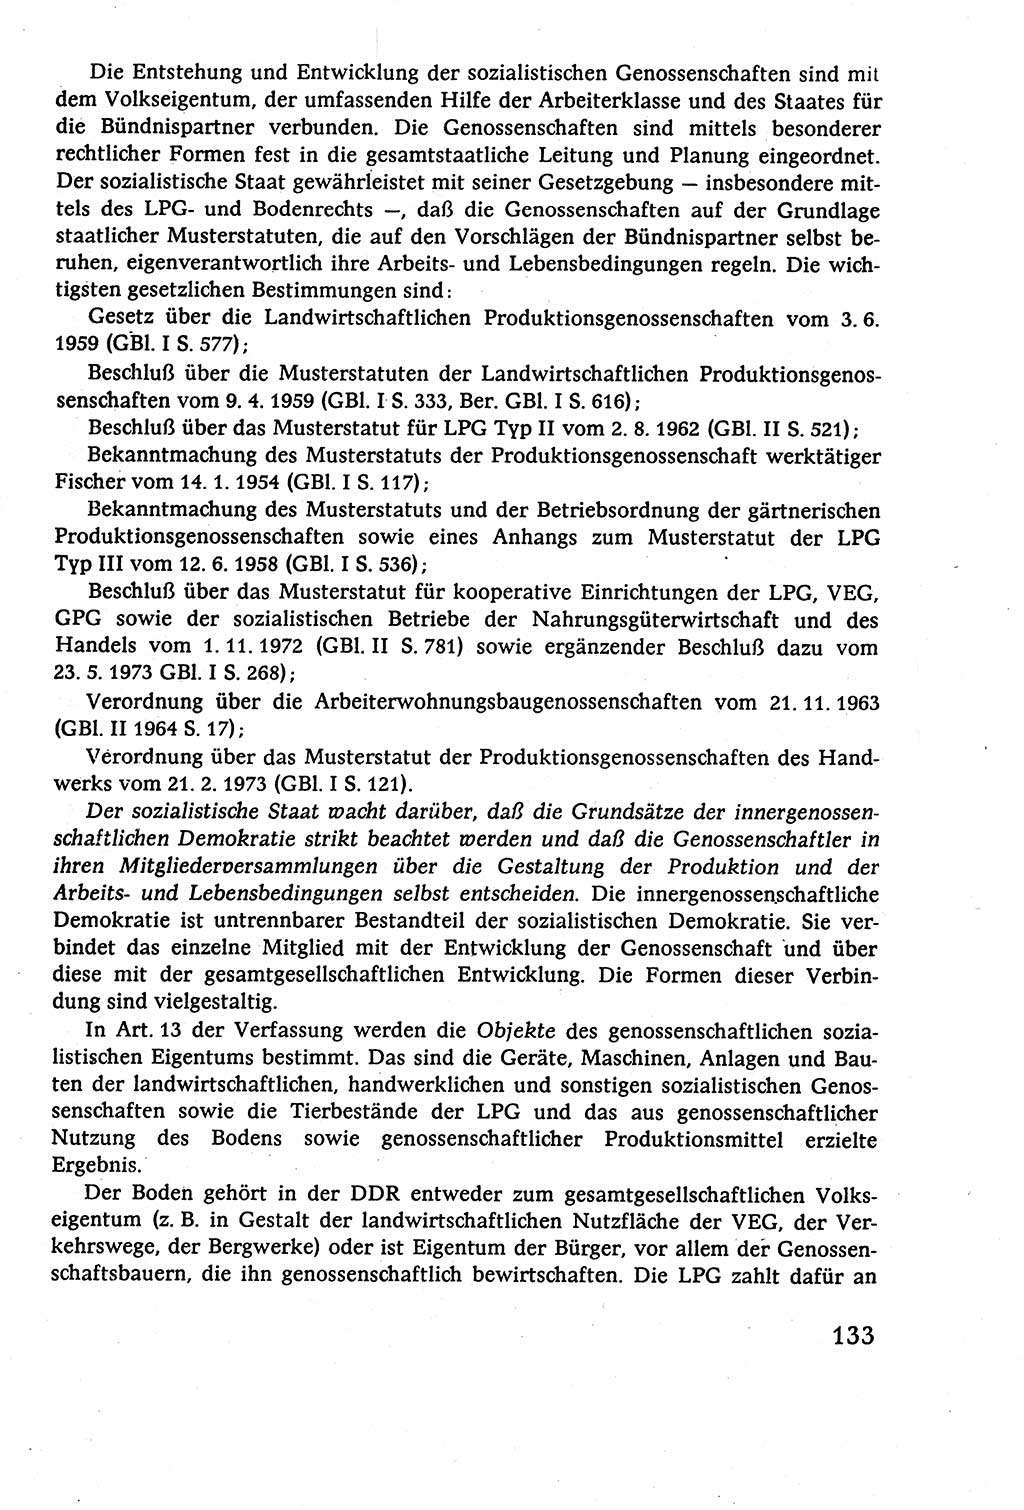 Staatsrecht der DDR (Deutsche Demokratische Republik), Lehrbuch 1977, Seite 133 (St.-R. DDR Lb. 1977, S. 133)